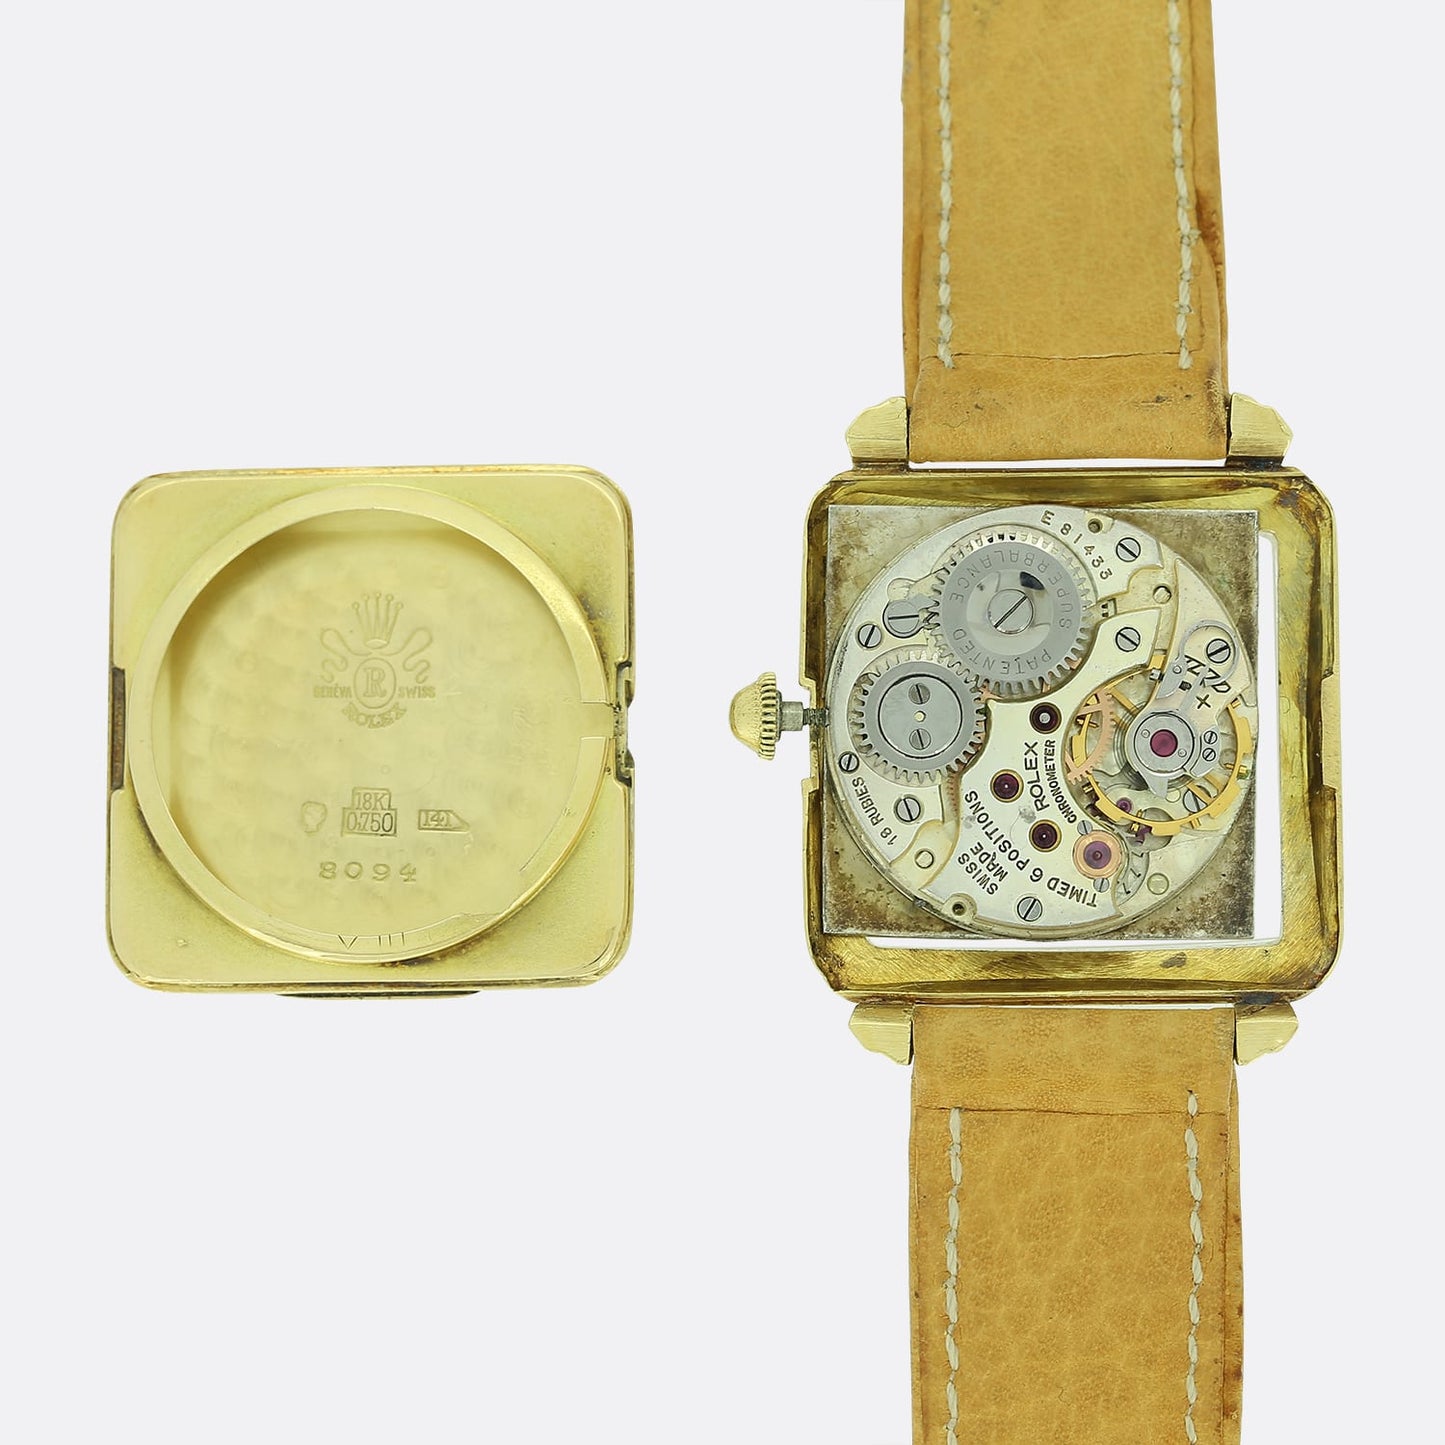 Vintage 1930's Manual Rolex Wristwatch